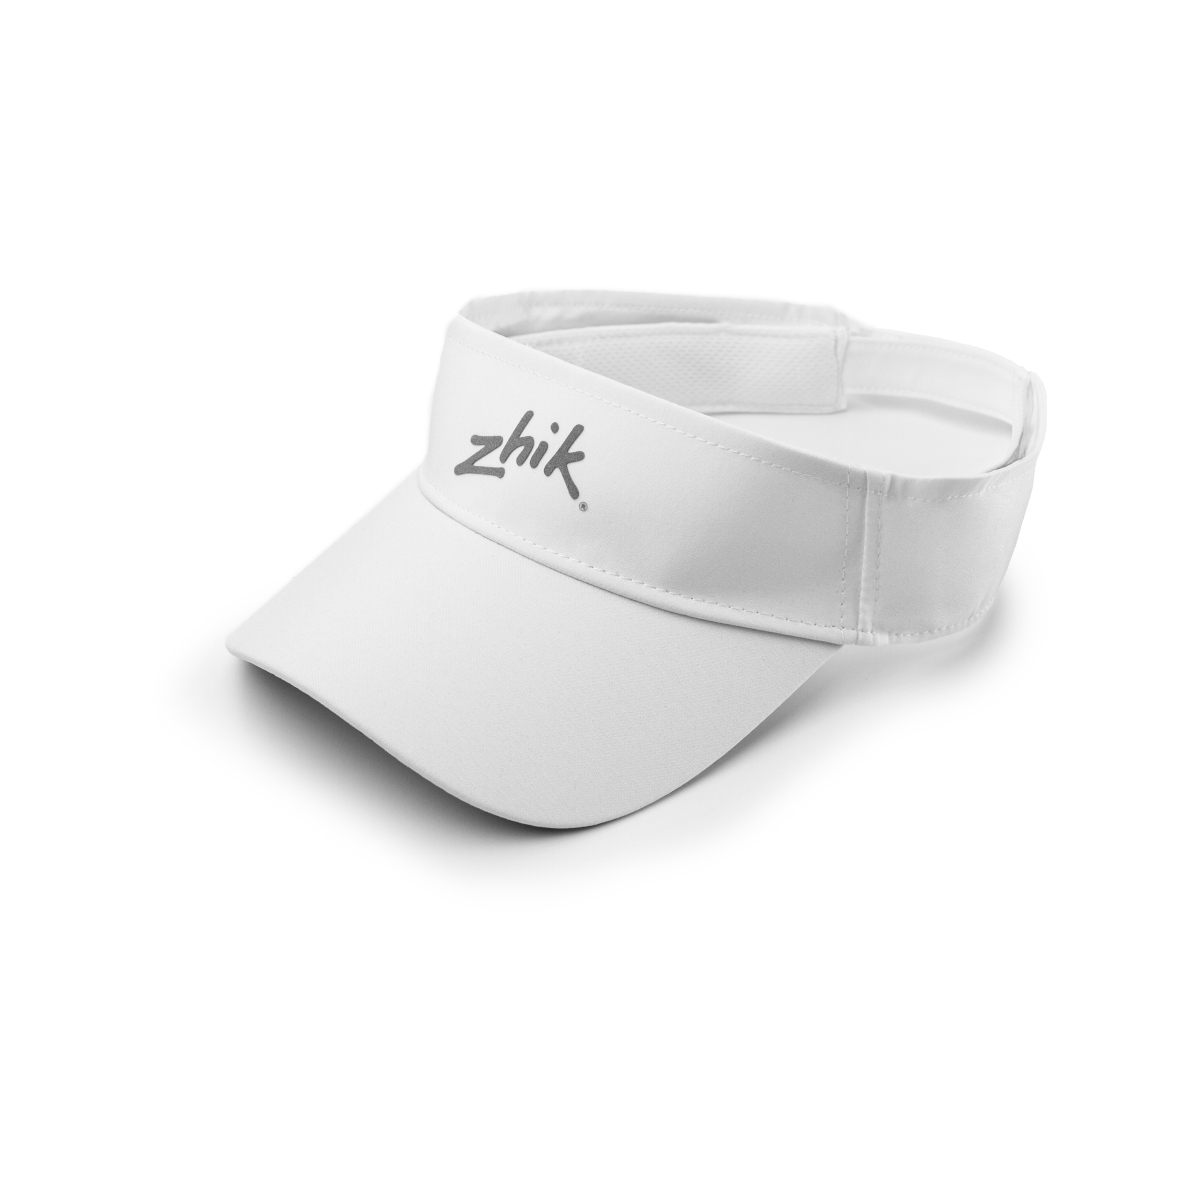 Zhik Sport casquette visière blanche